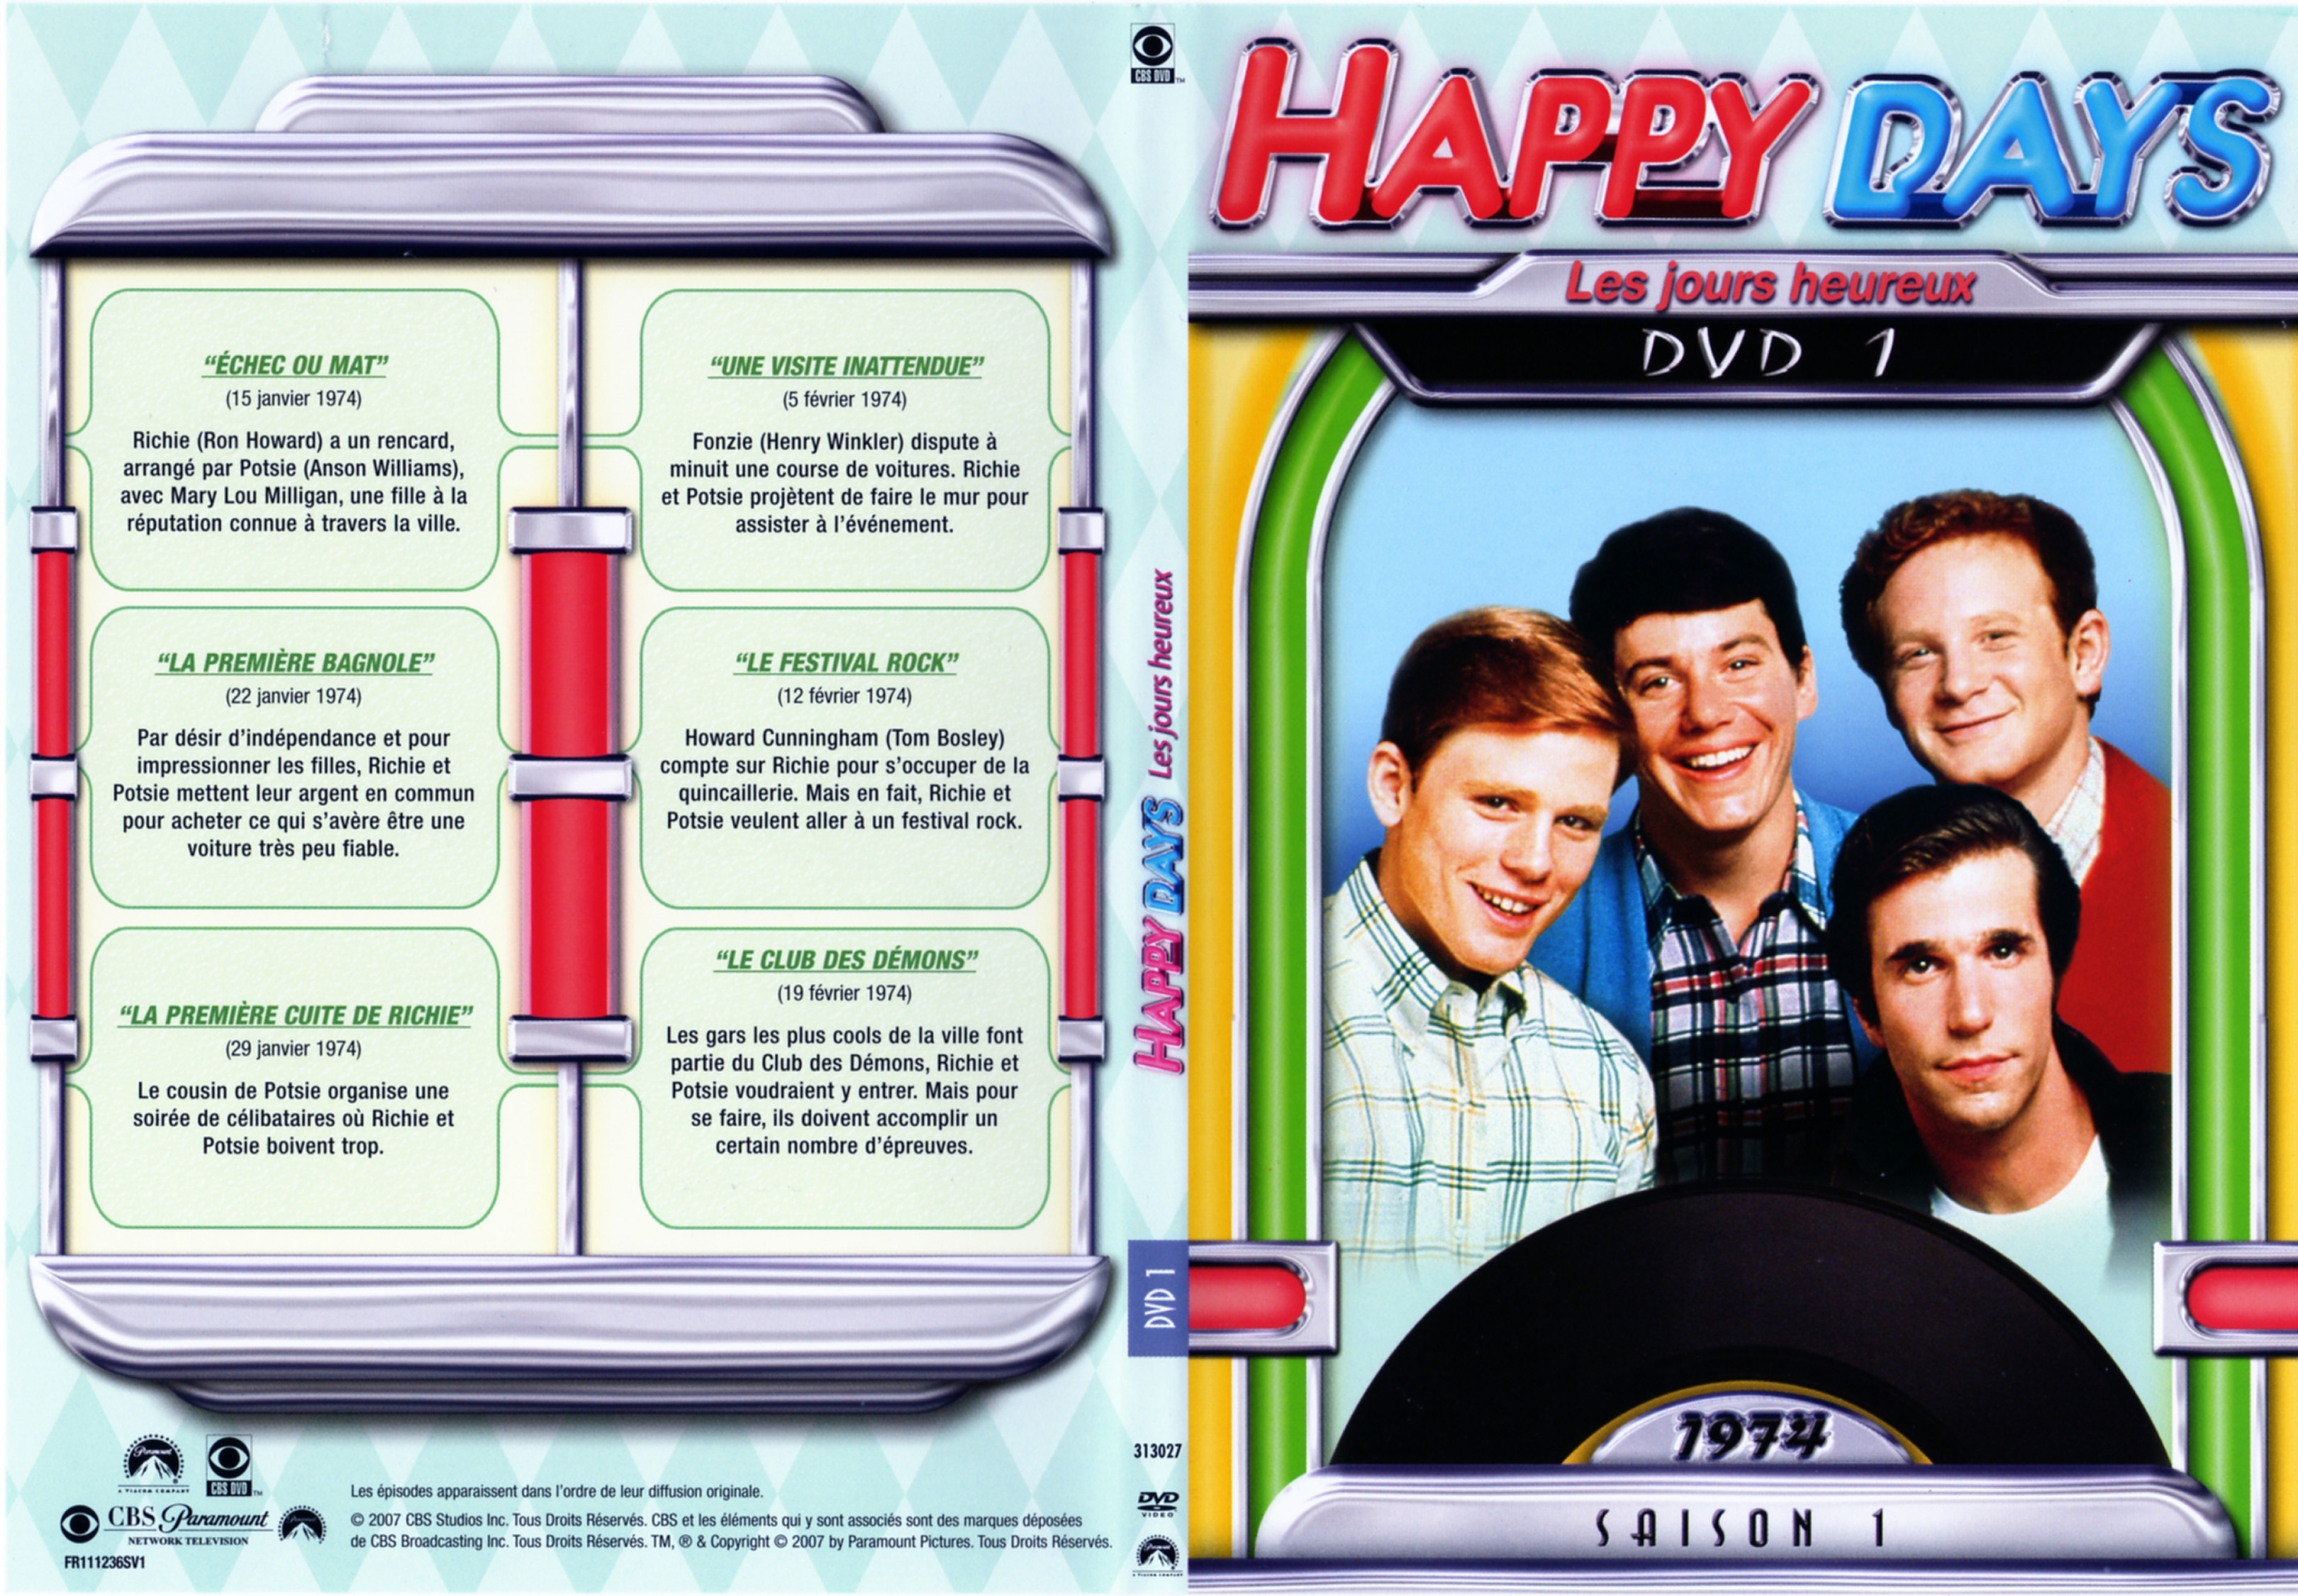 Jaquette DVD Happy days Saison 01 DVD 1